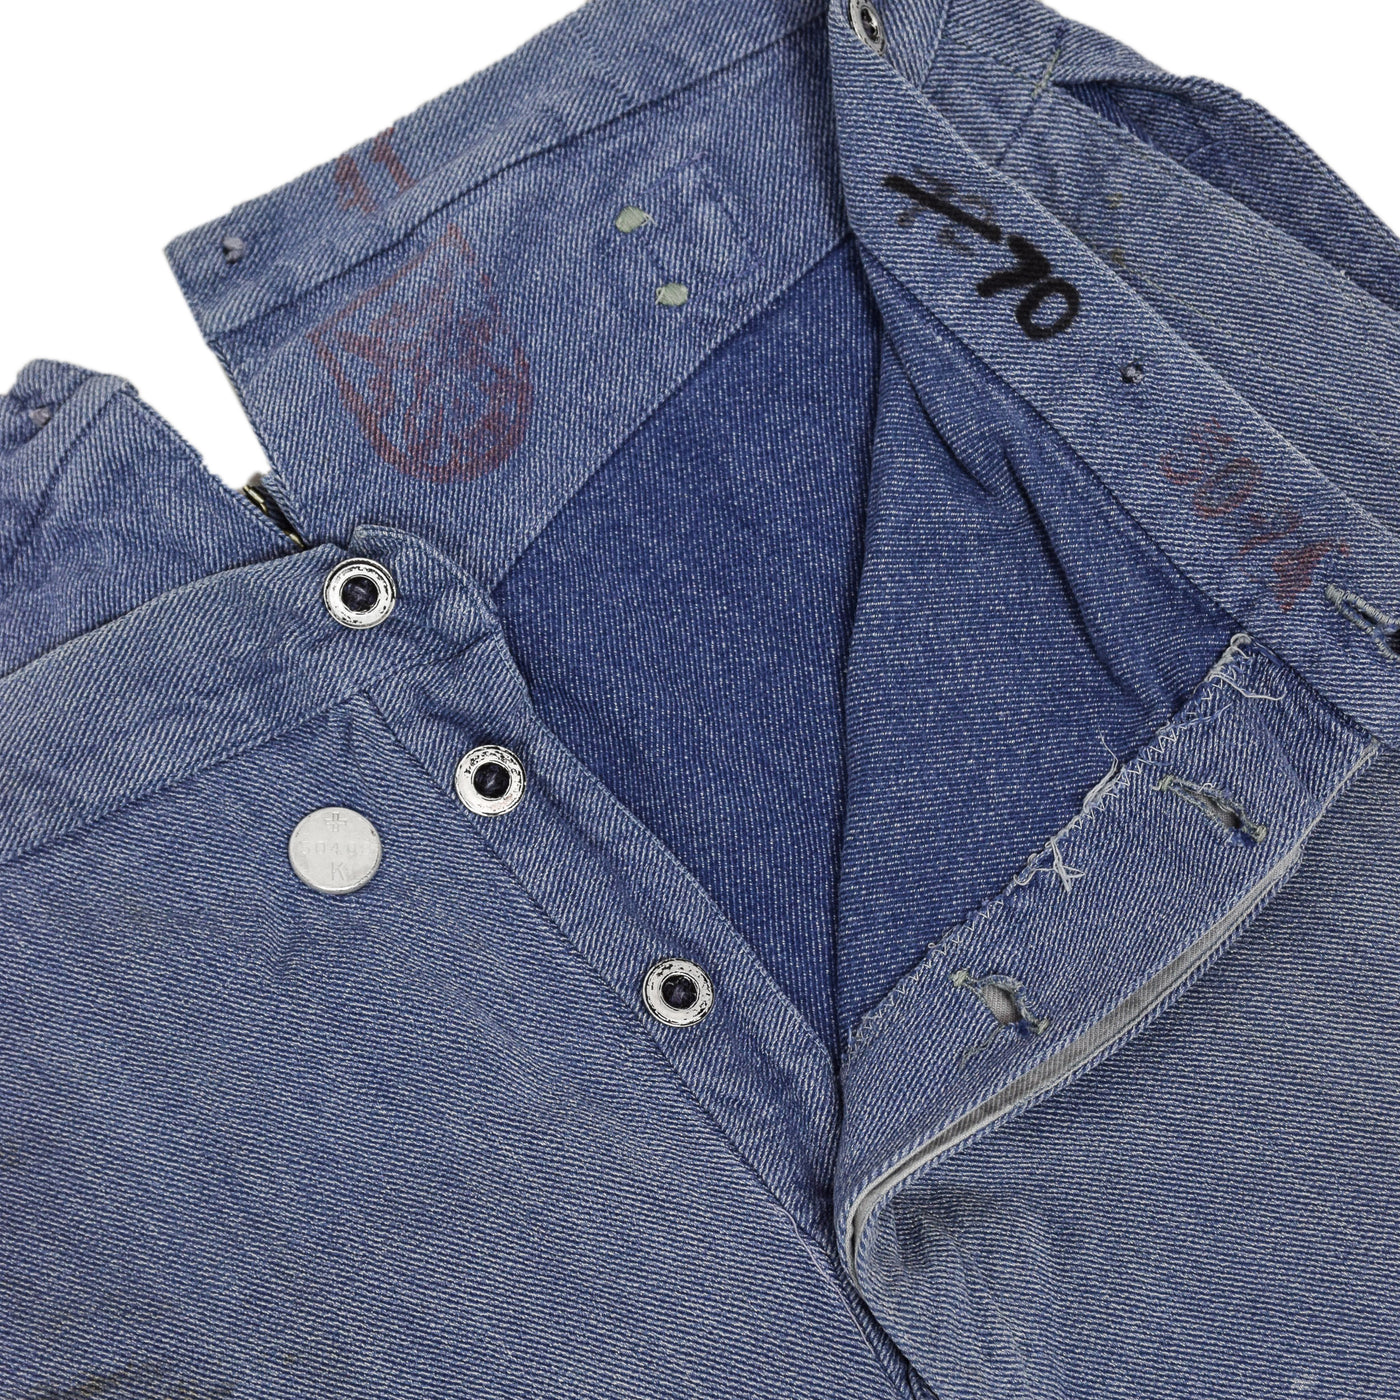 Vintage 60s Swiss Army Salt & Pepper Denim Fatigue Prison Pants L / XL buttons